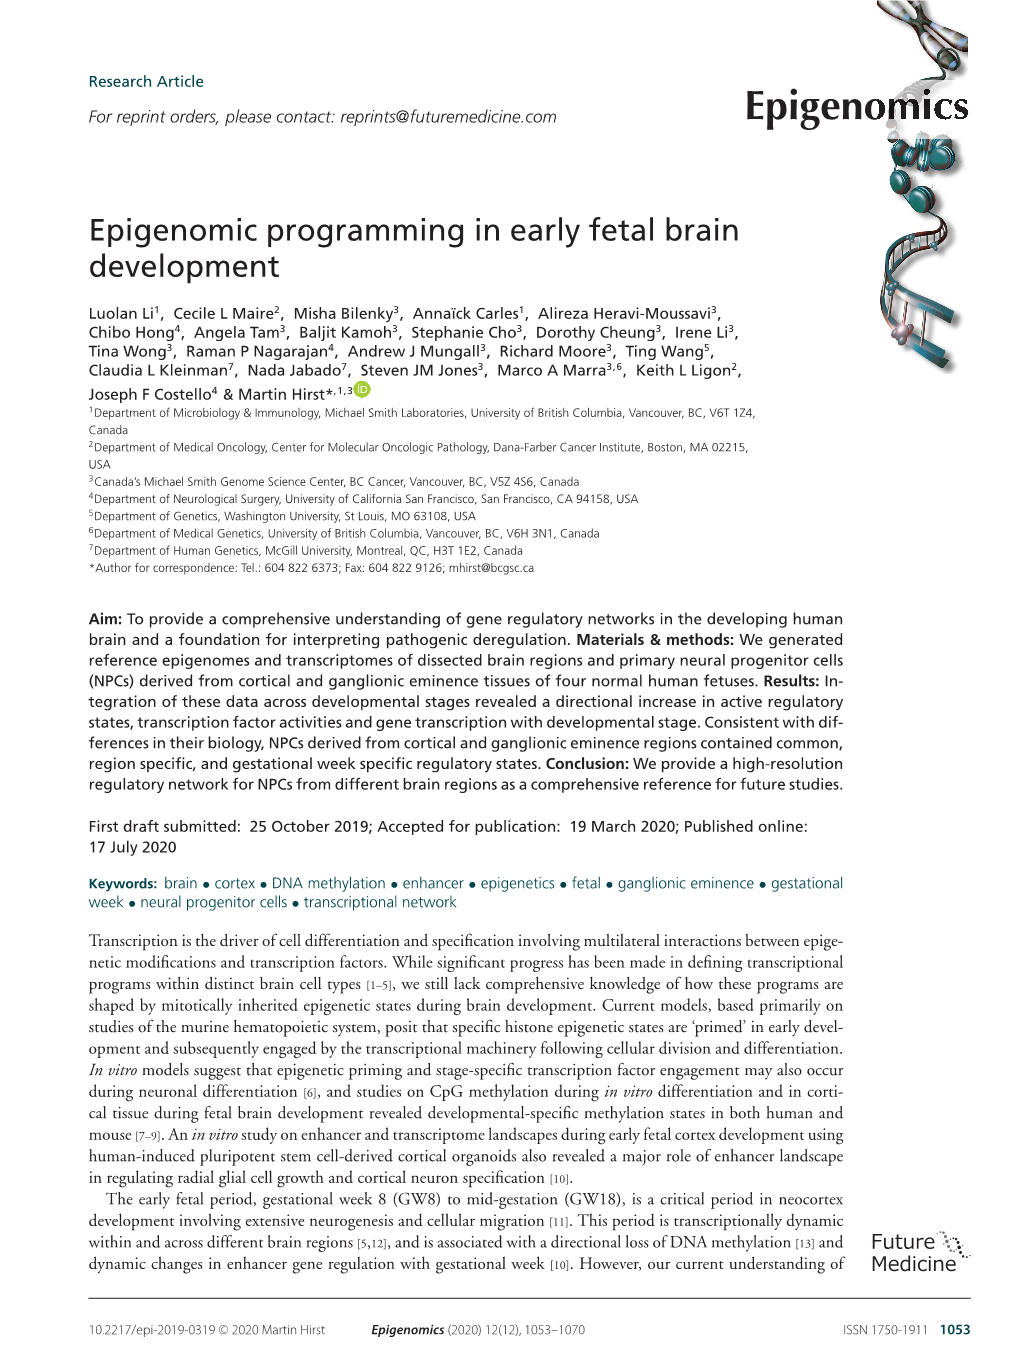 Epigenomic Programming in Early Fetal Brain Development